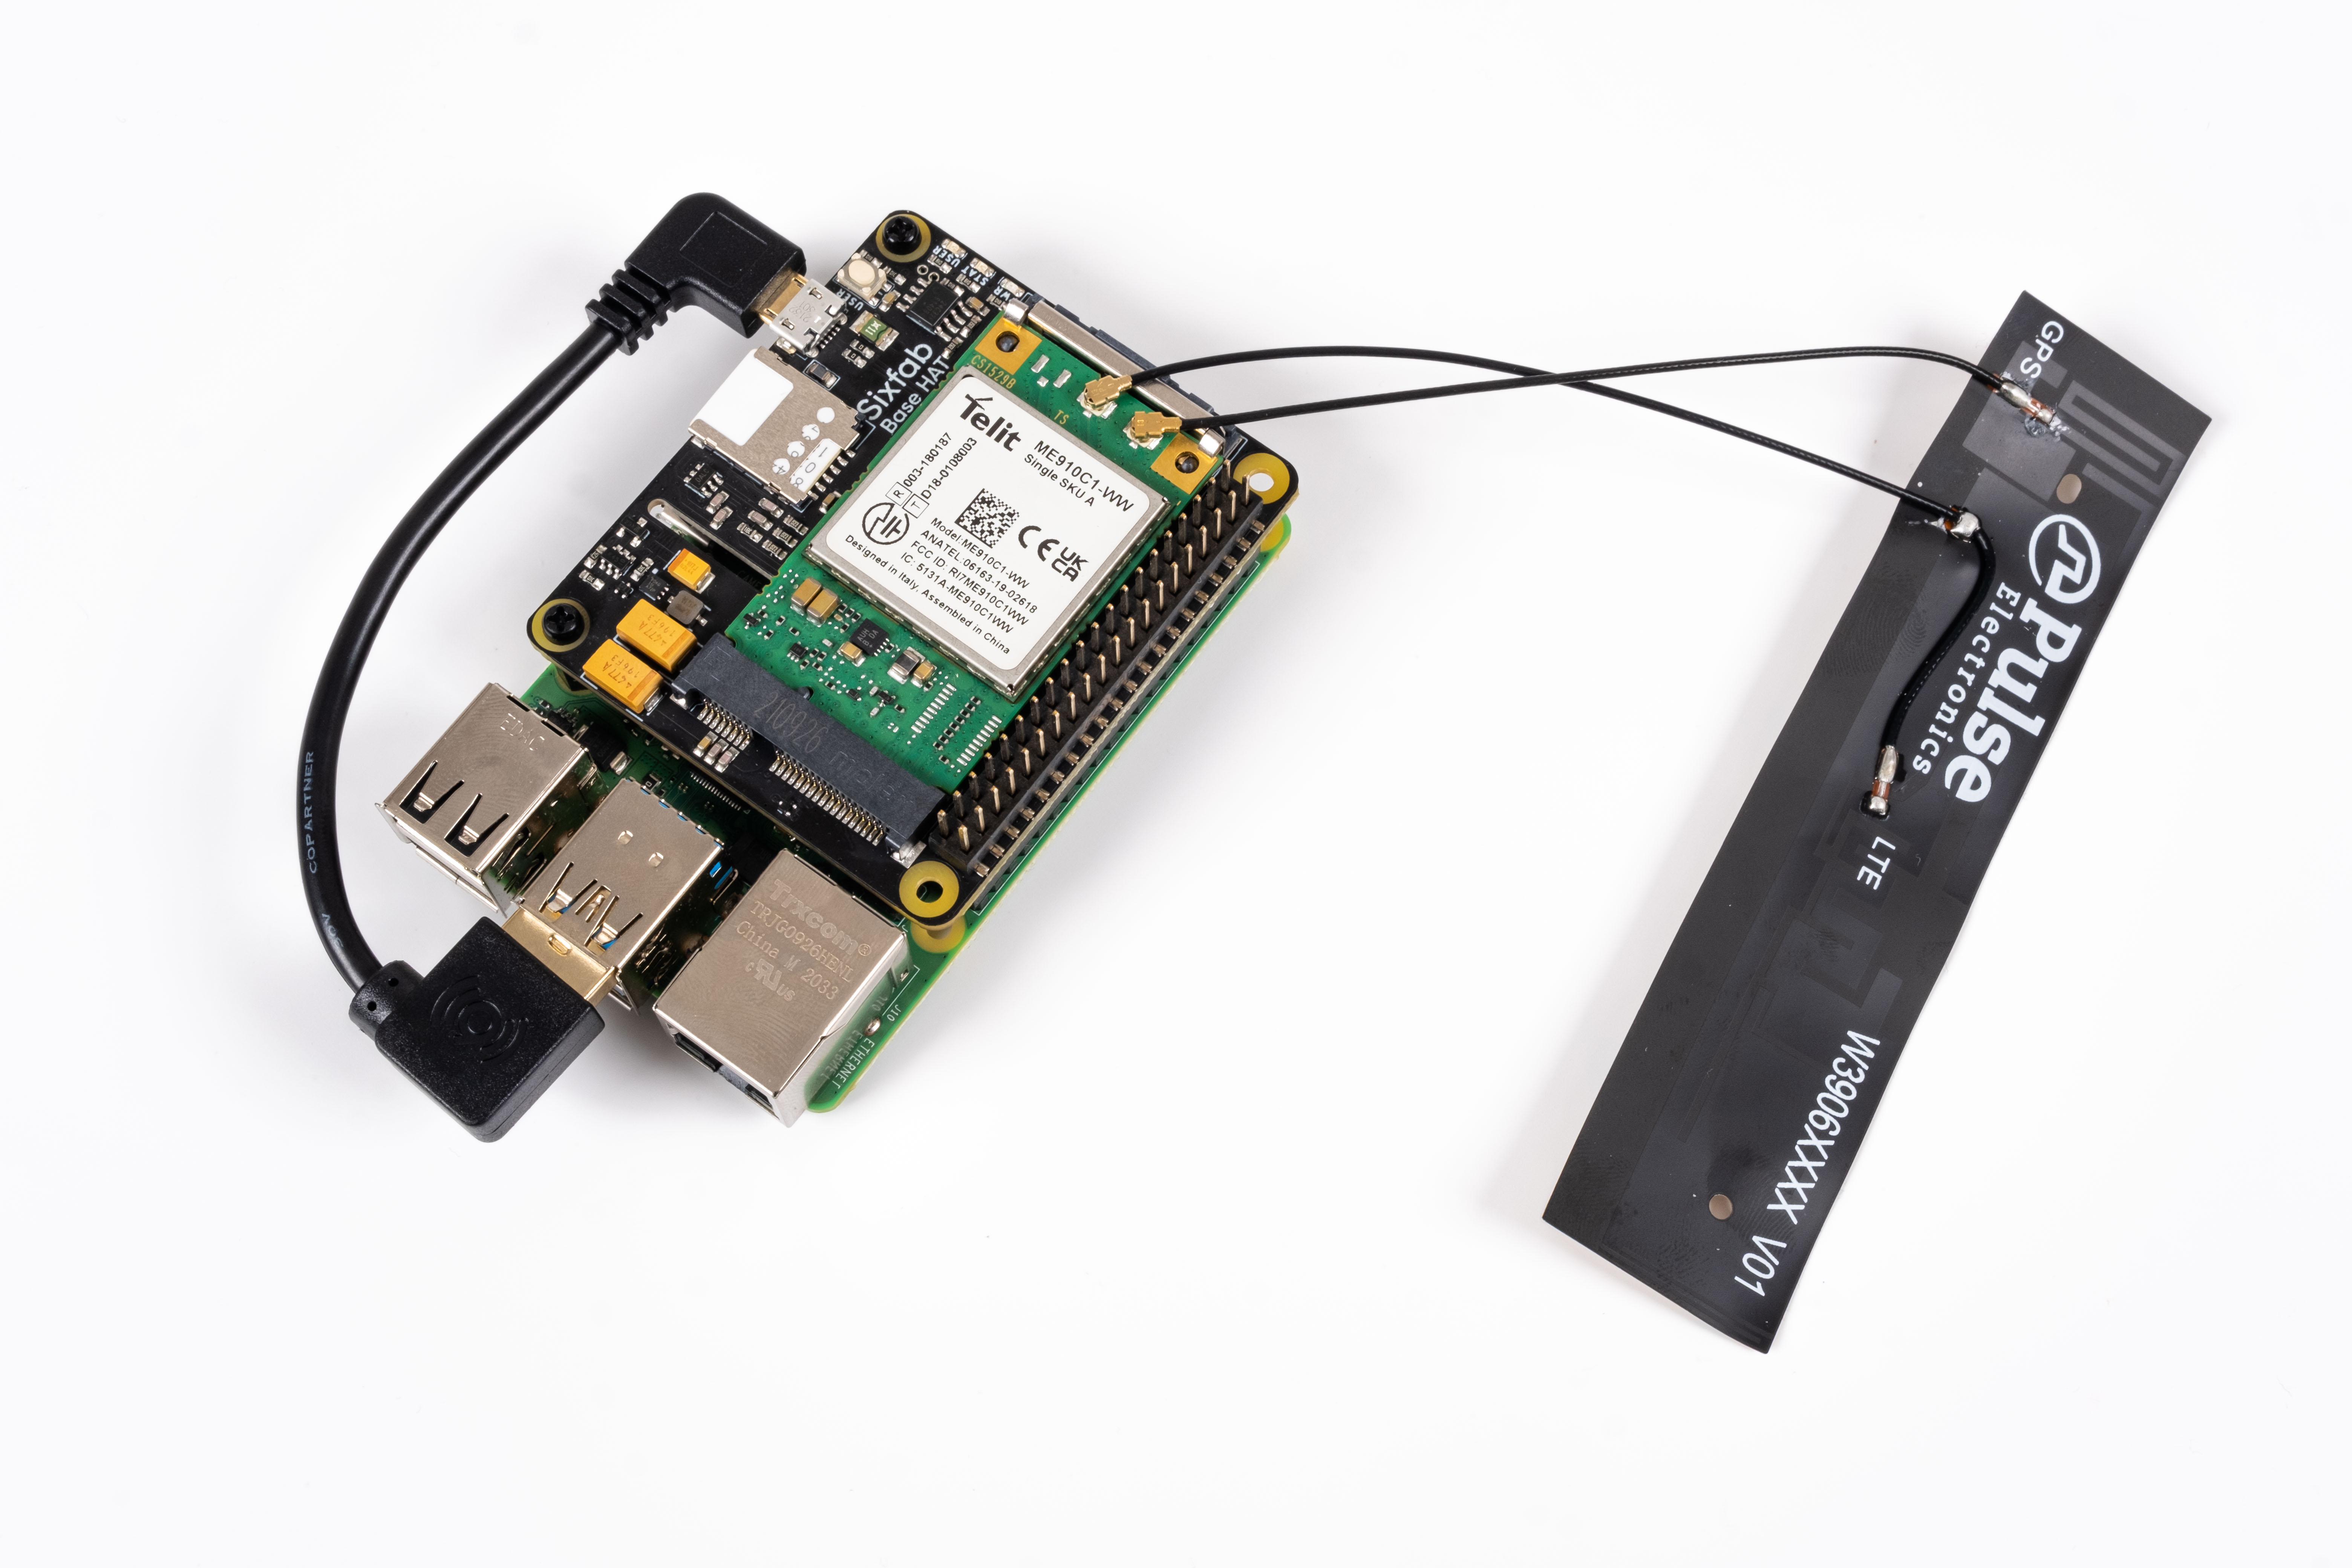 Sixfab Raspberry Pi Cellular IoT Kit (LTE-M)